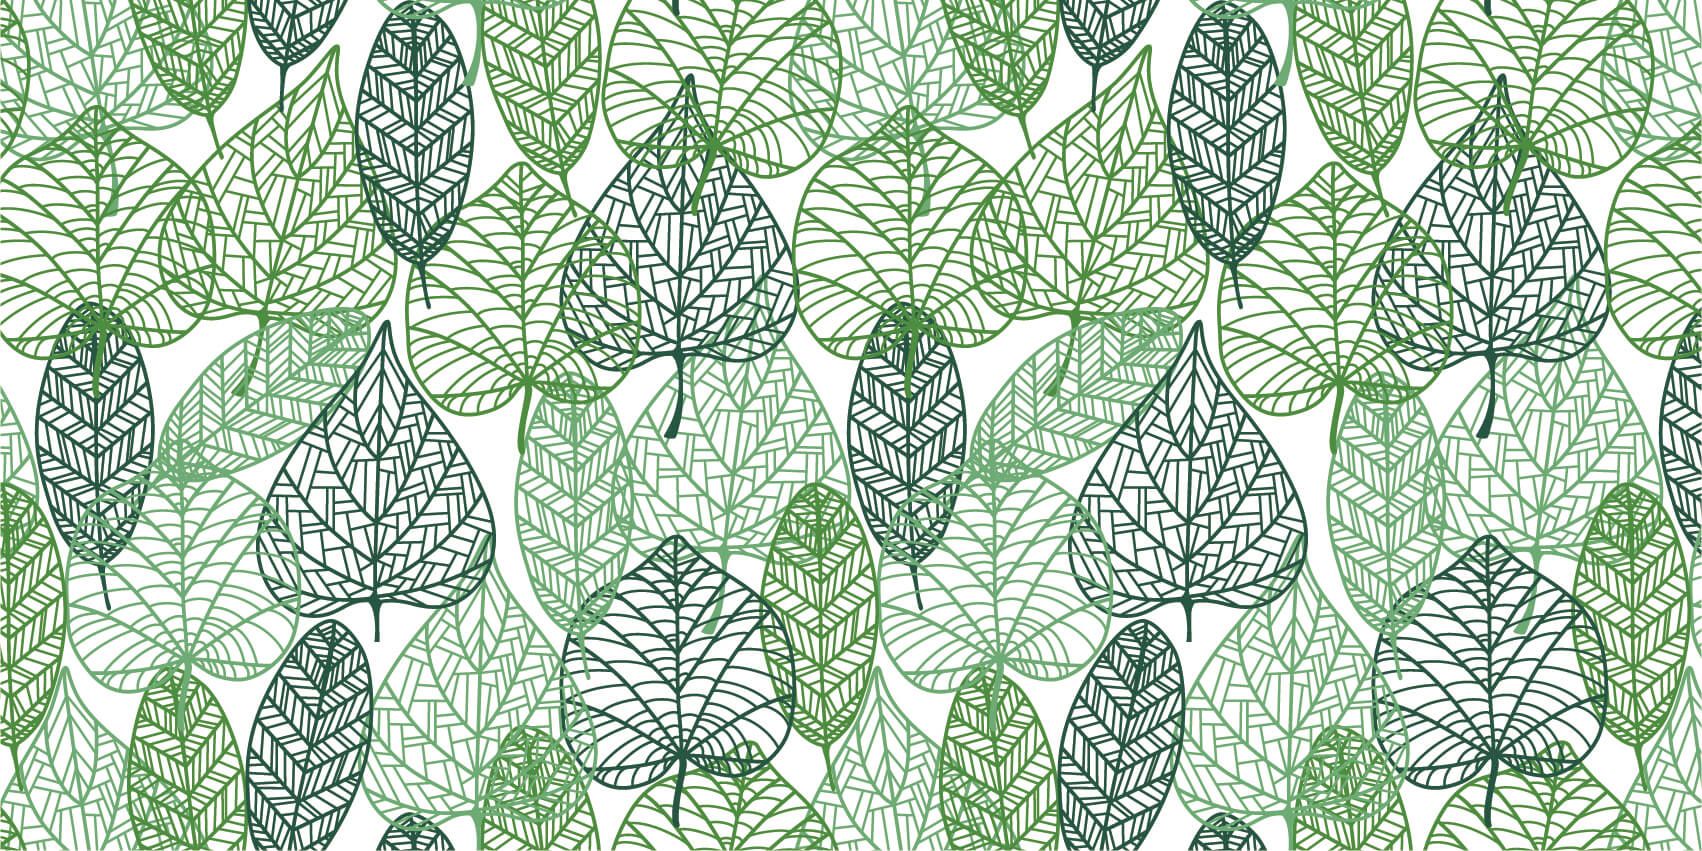 Bladeren - Opengewerkte groene bladeren - Hobbykamer